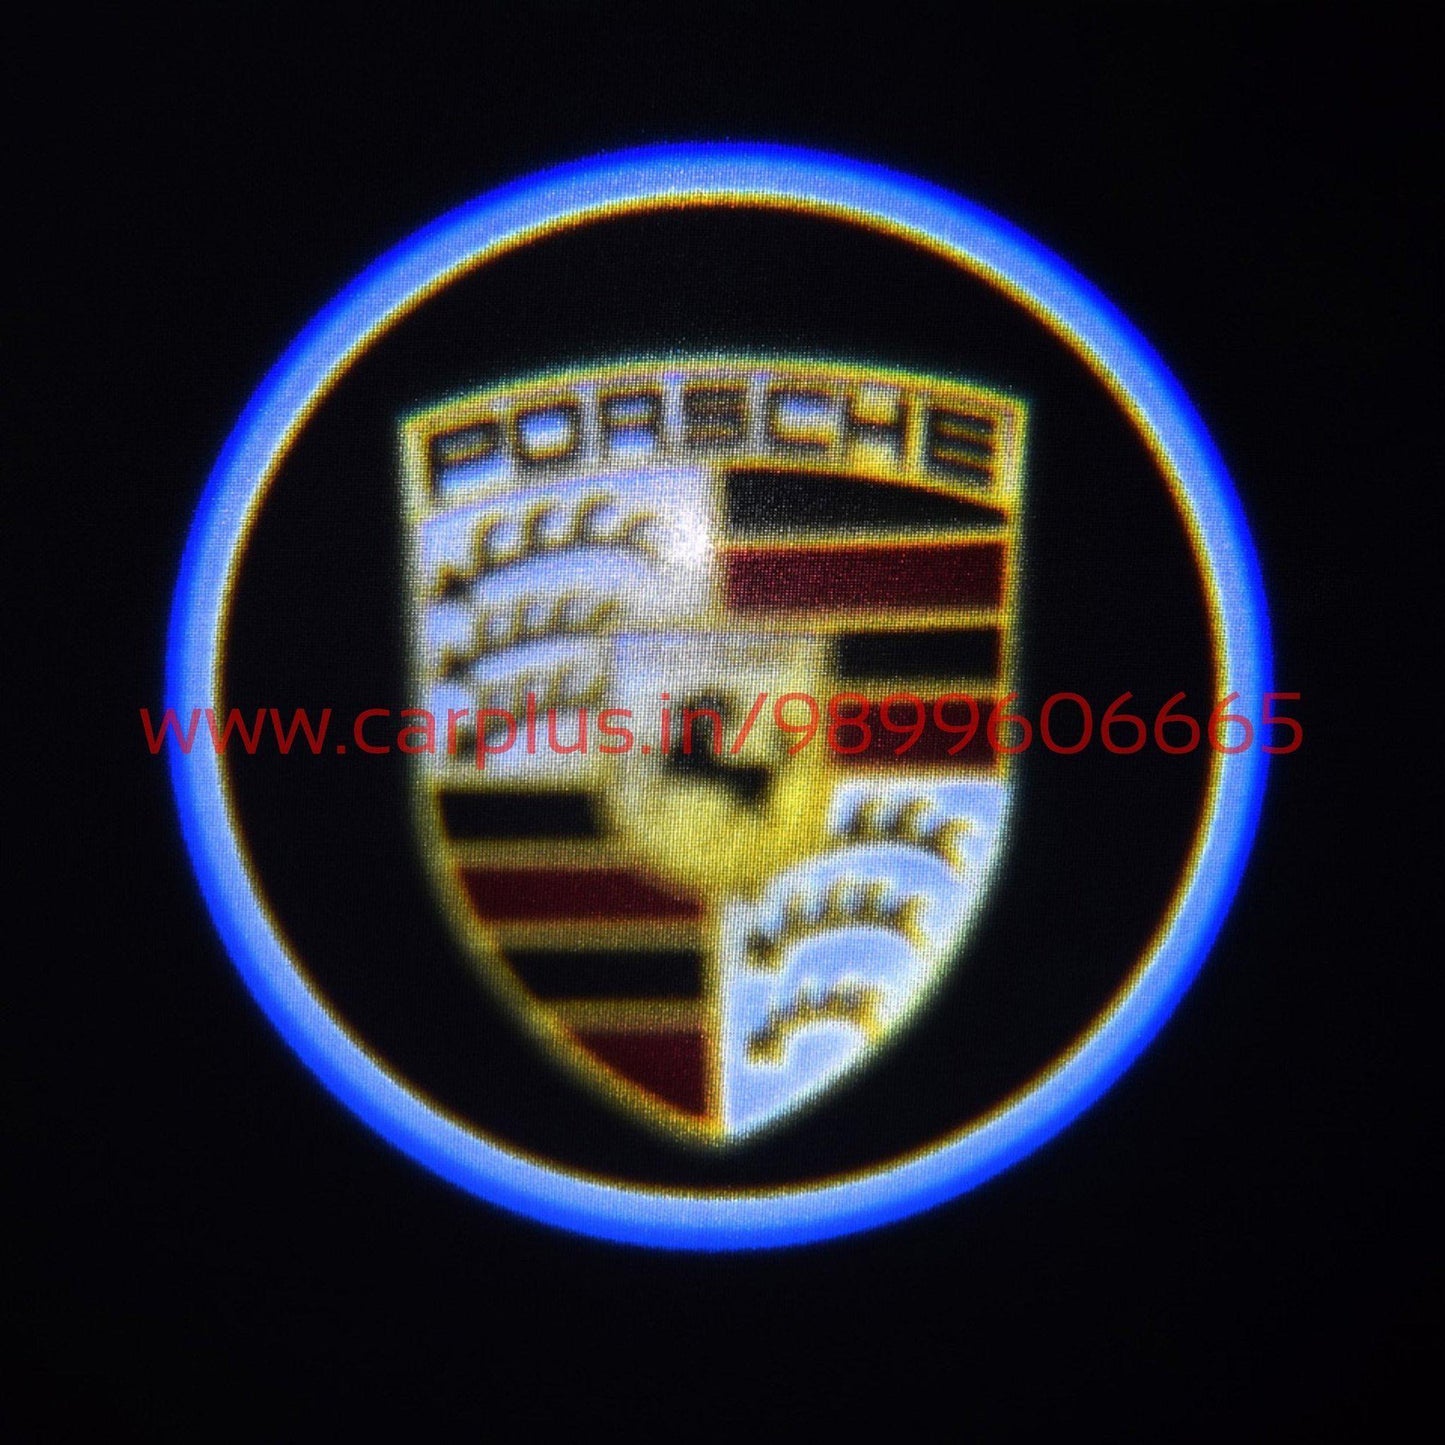 
                  
                    KMH Plug & Play Ghost Shadow Light For Porsche-(Set of 2 pcs) KMH-GHOST SHADOW LIGHT GHOST SHADOW LIGHT.
                  
                